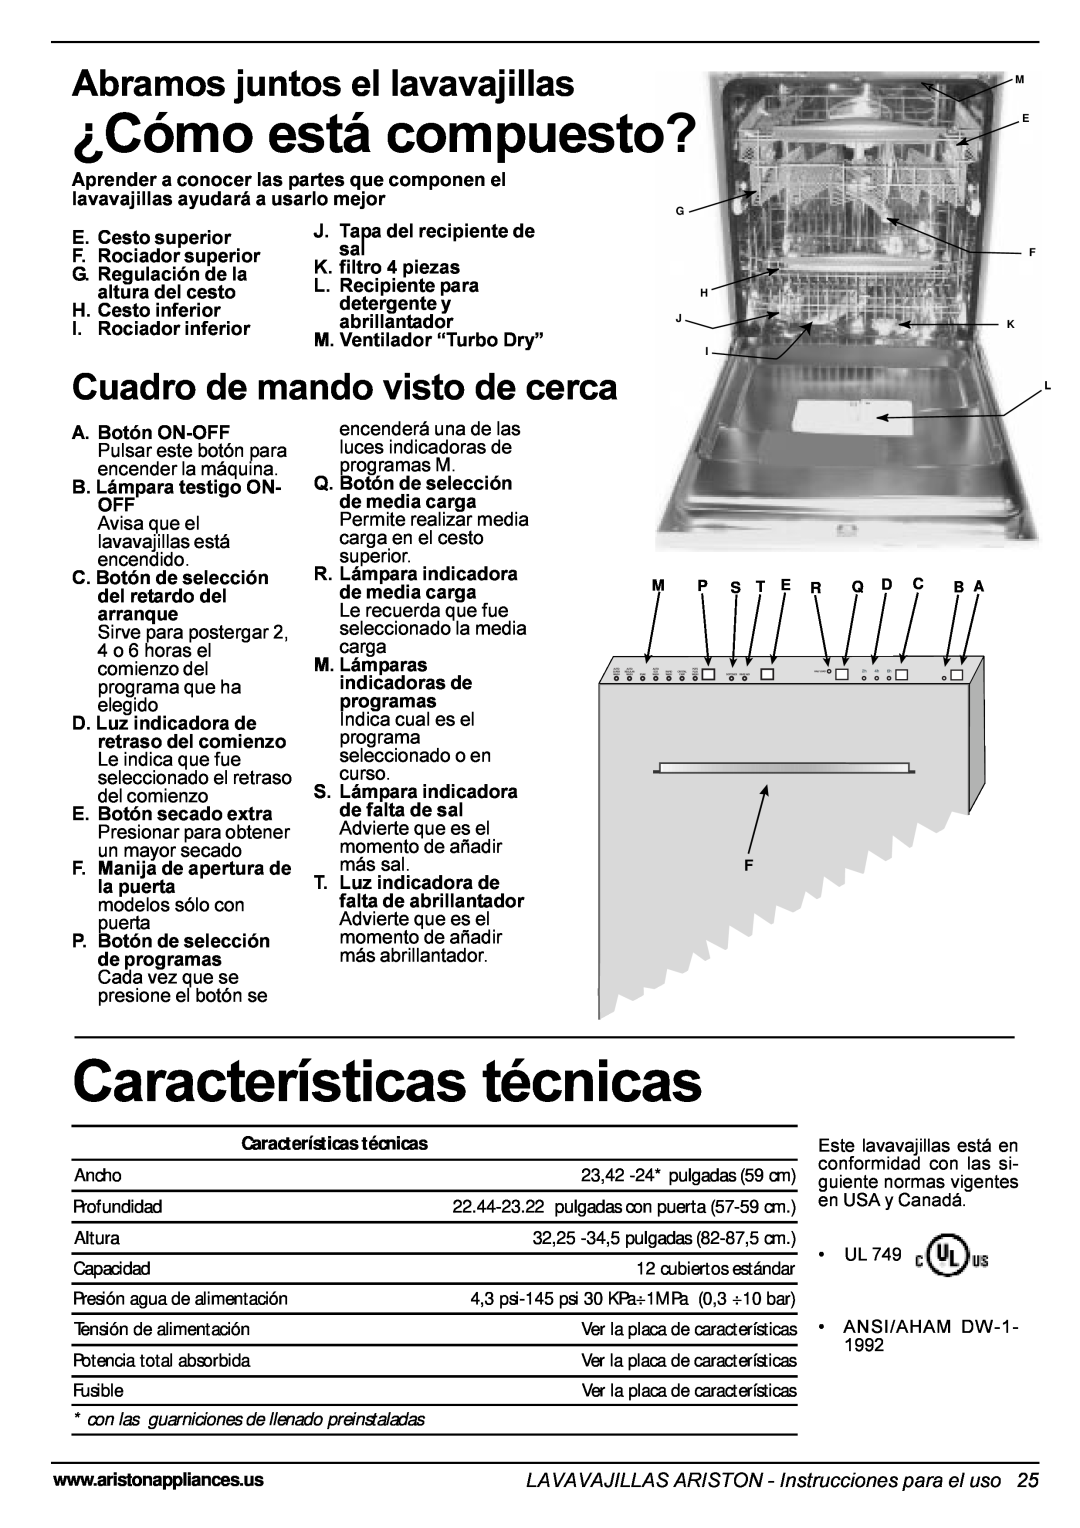 Ariston LI 700 I-S-X manual Características técnicas, ¿Cómo está compuesto?, Abramos juntos el lavavajillas 